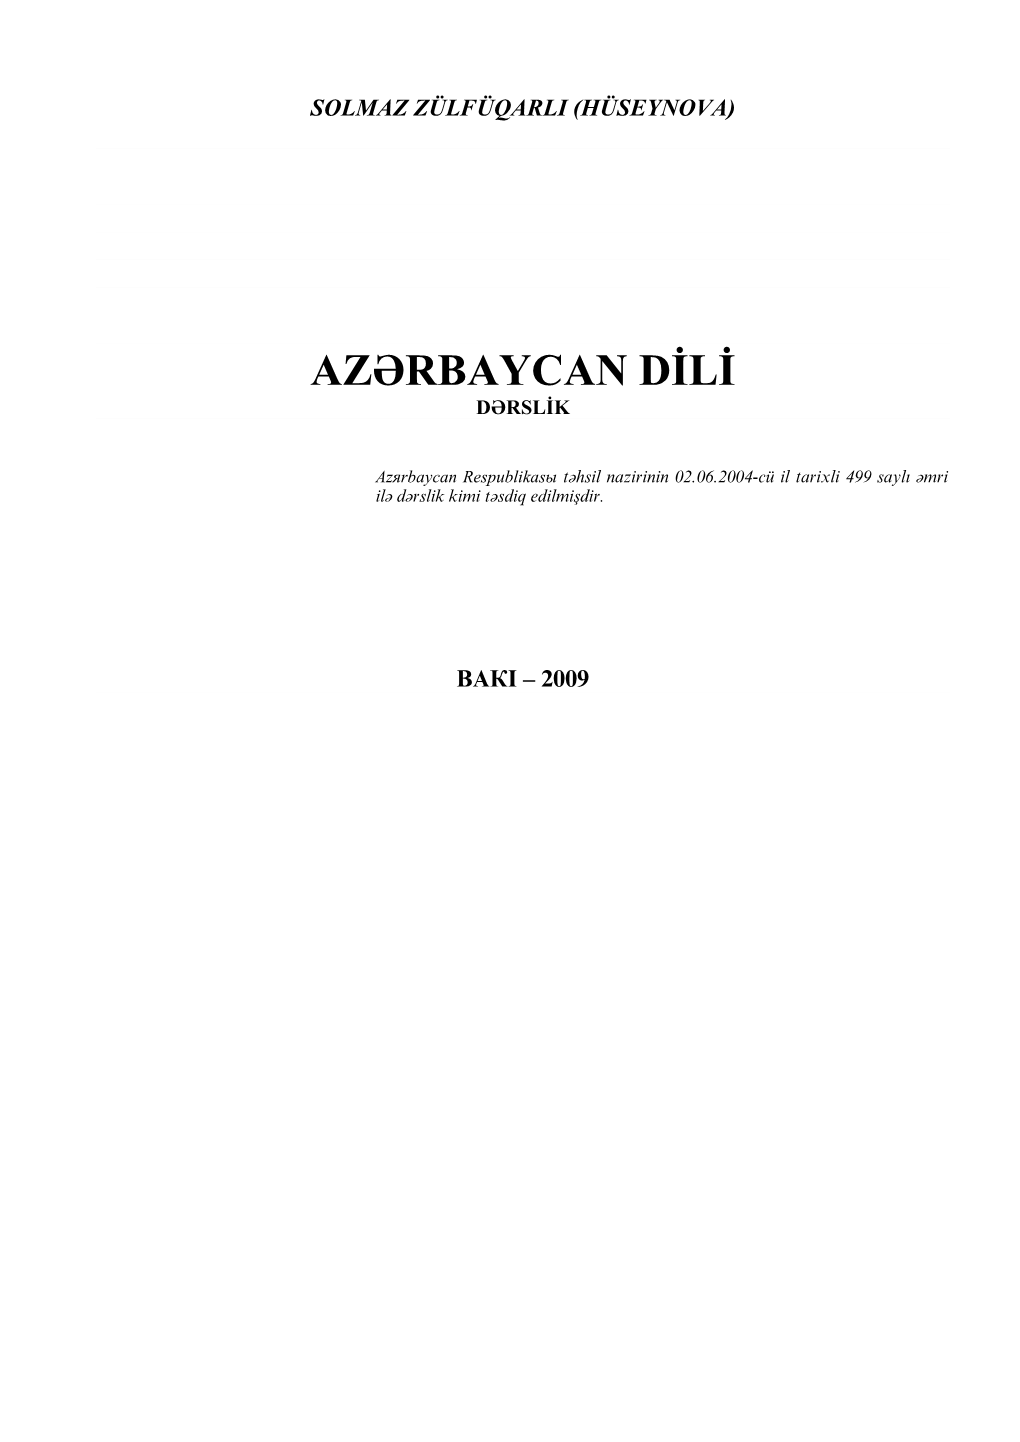 Azərbaycan Respublikası Təhsü Mzirinin 02